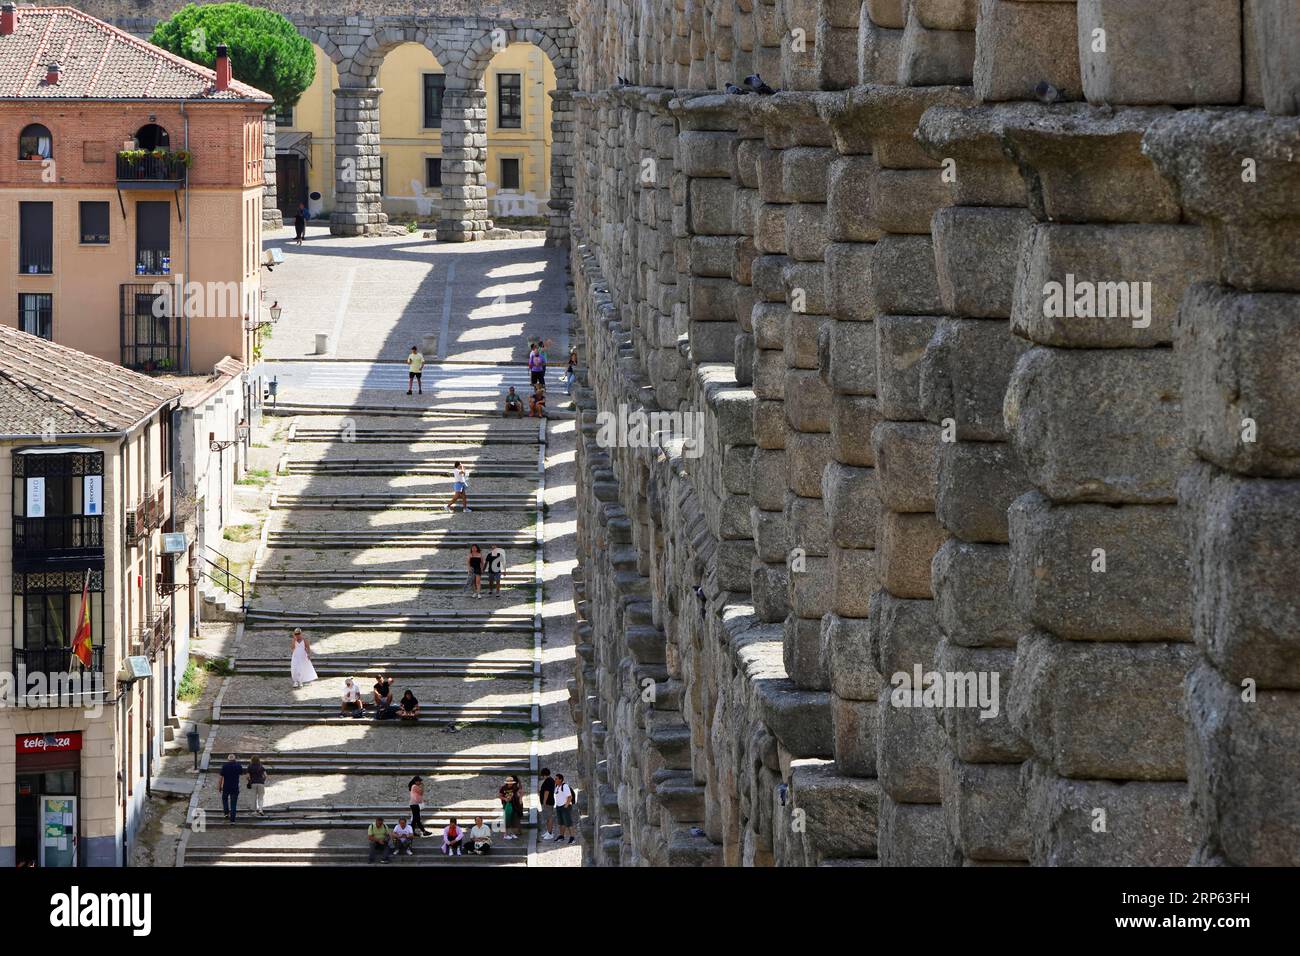 Vista dell'acquedotto romano di Segovia, con piccole figure umane per proporzione Foto Stock